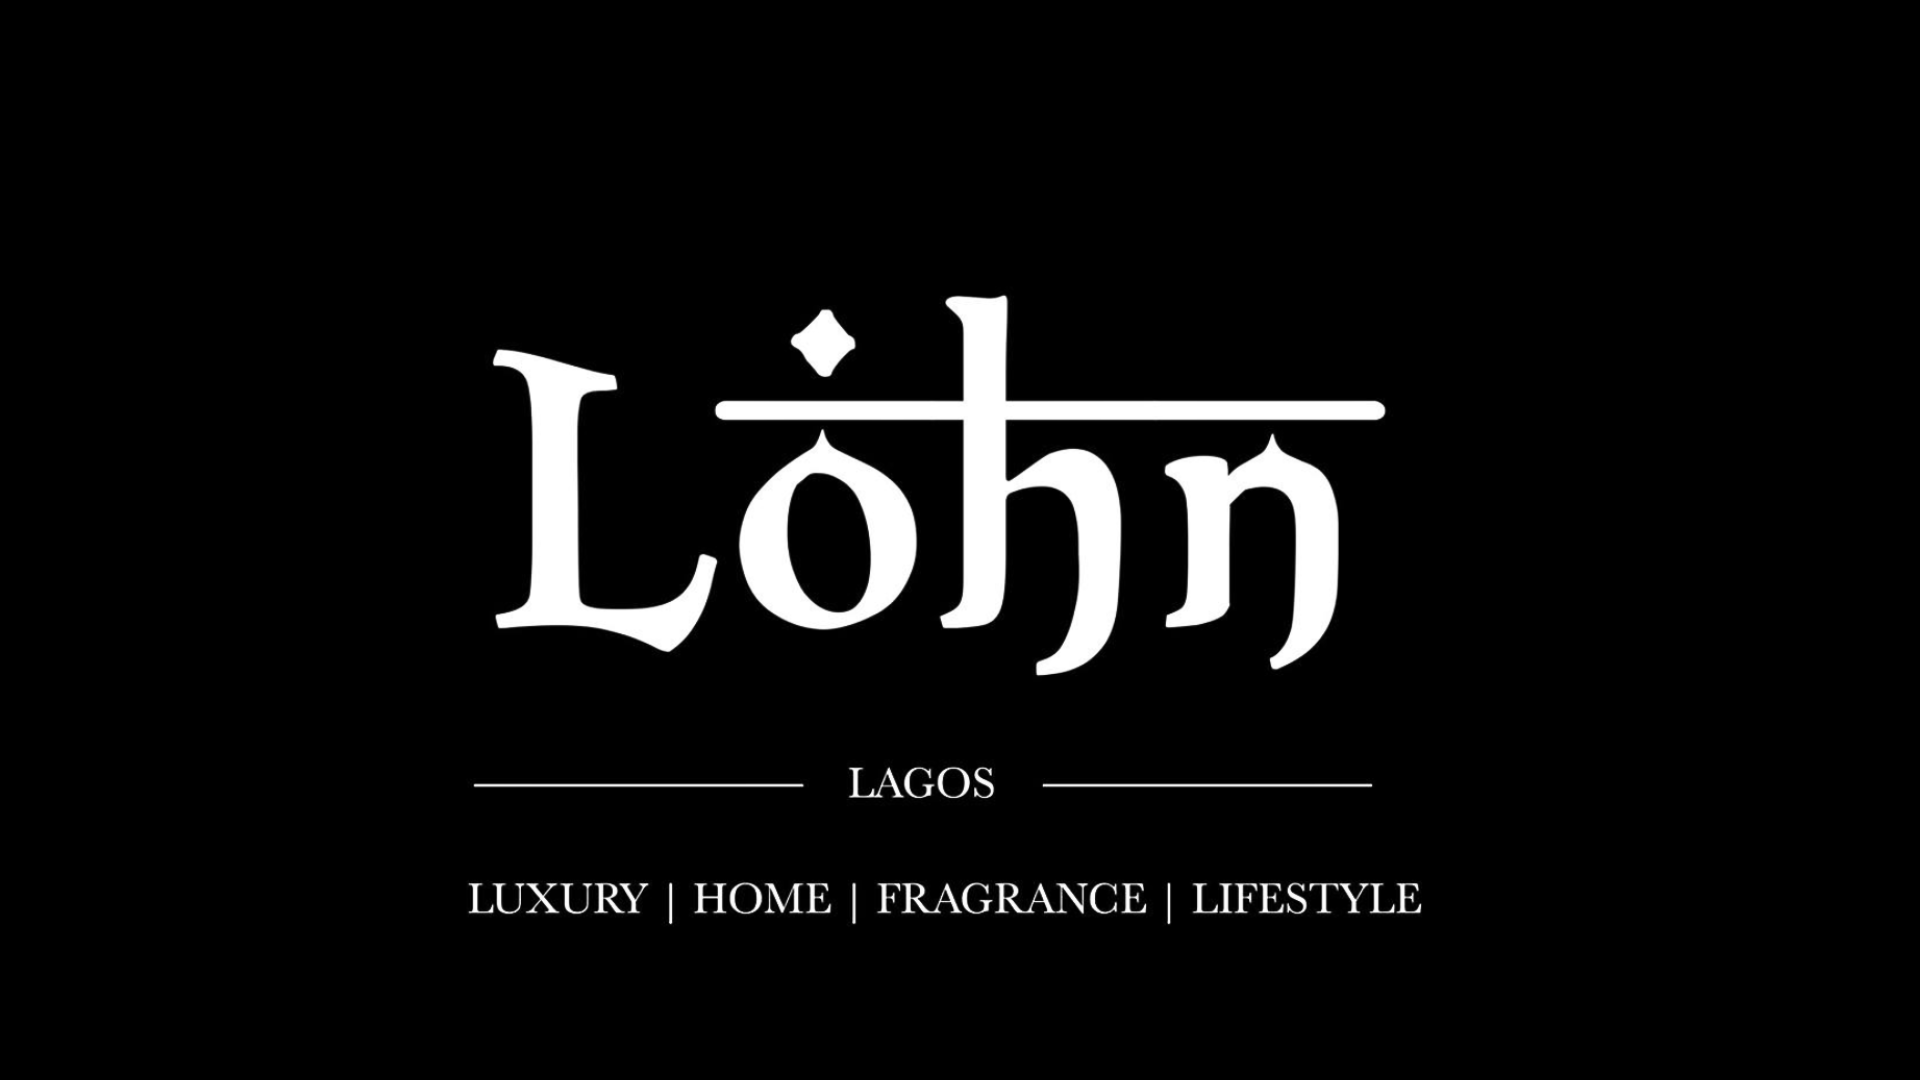 The-Lohn-Lagos-Logo